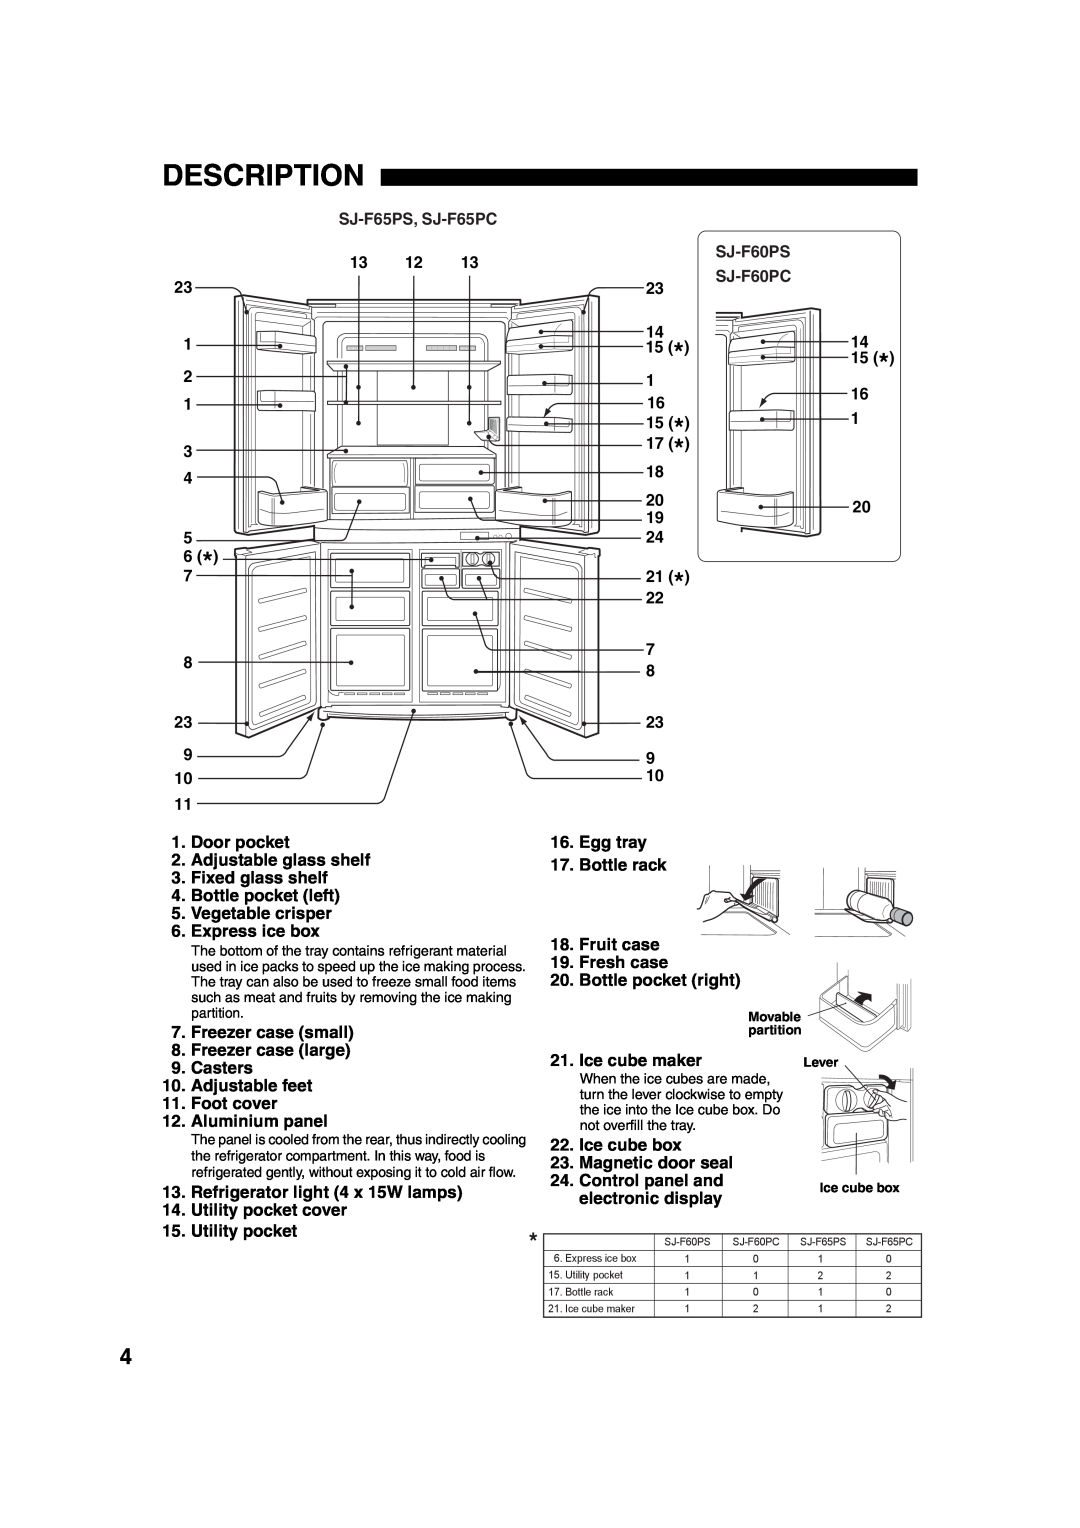 Sharp operation manual Description, SJ-F65PS, SJ-F65PC, SJ-F60PS, SJ-F60PC 